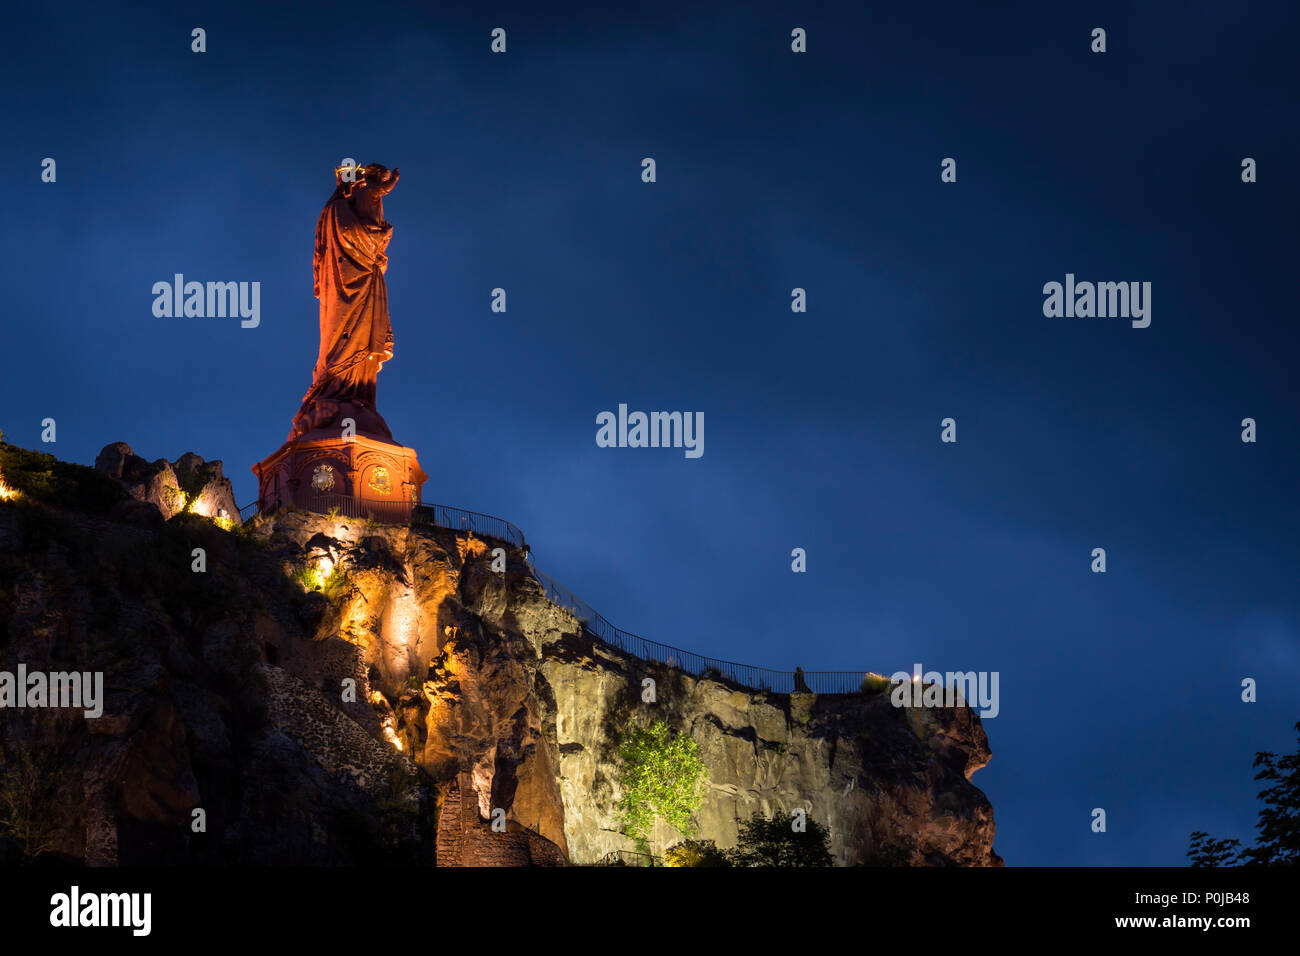 Statue de Notre Dame de France Le Puy en Velay Haute-Loire Auvergne-Rhône-Alpes France éclairée la nuit Banque D'Images